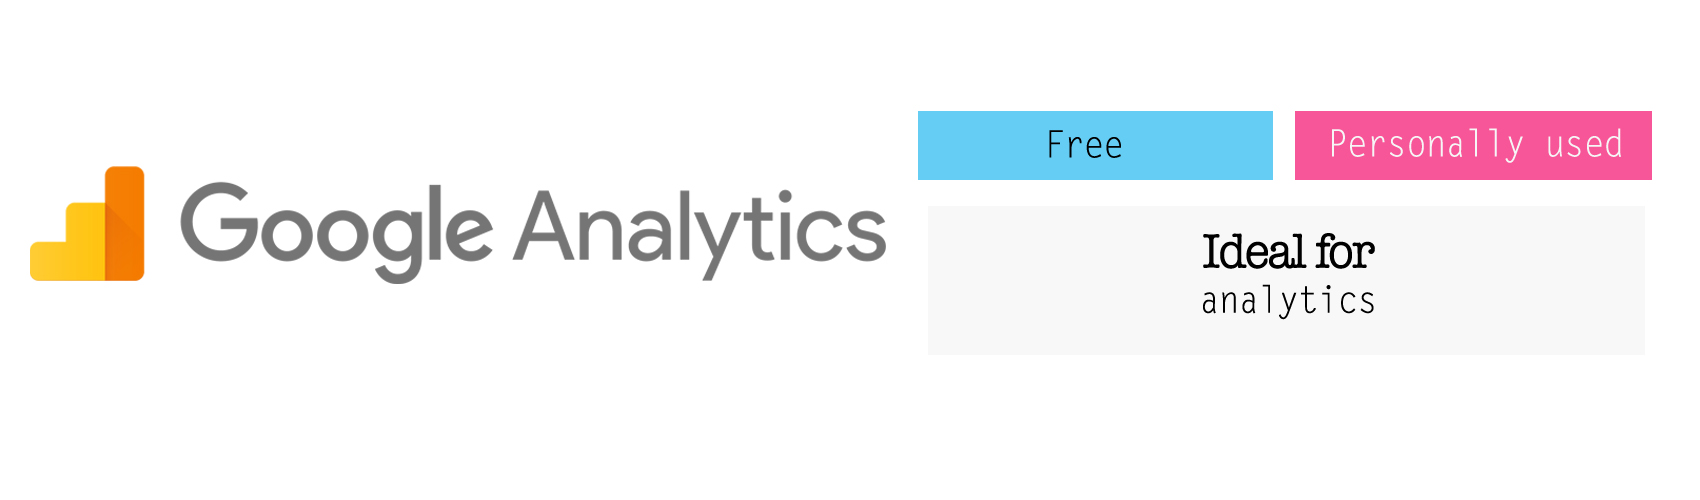 Google Analytics for analytics